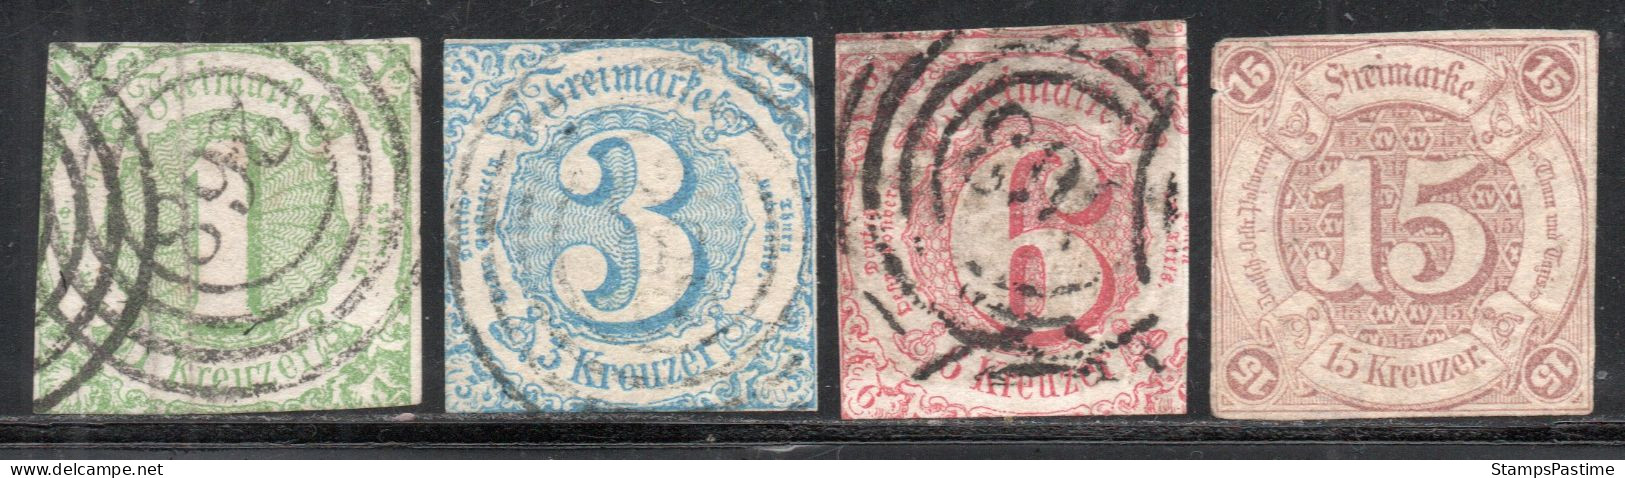 ALEMANIA – THURN Y TAXIS SUR Serie No Completa X 4 Sellos Usados CIFRAS Año 1859 – Valorizada En Catálogo € 104,25 - Afgestempeld